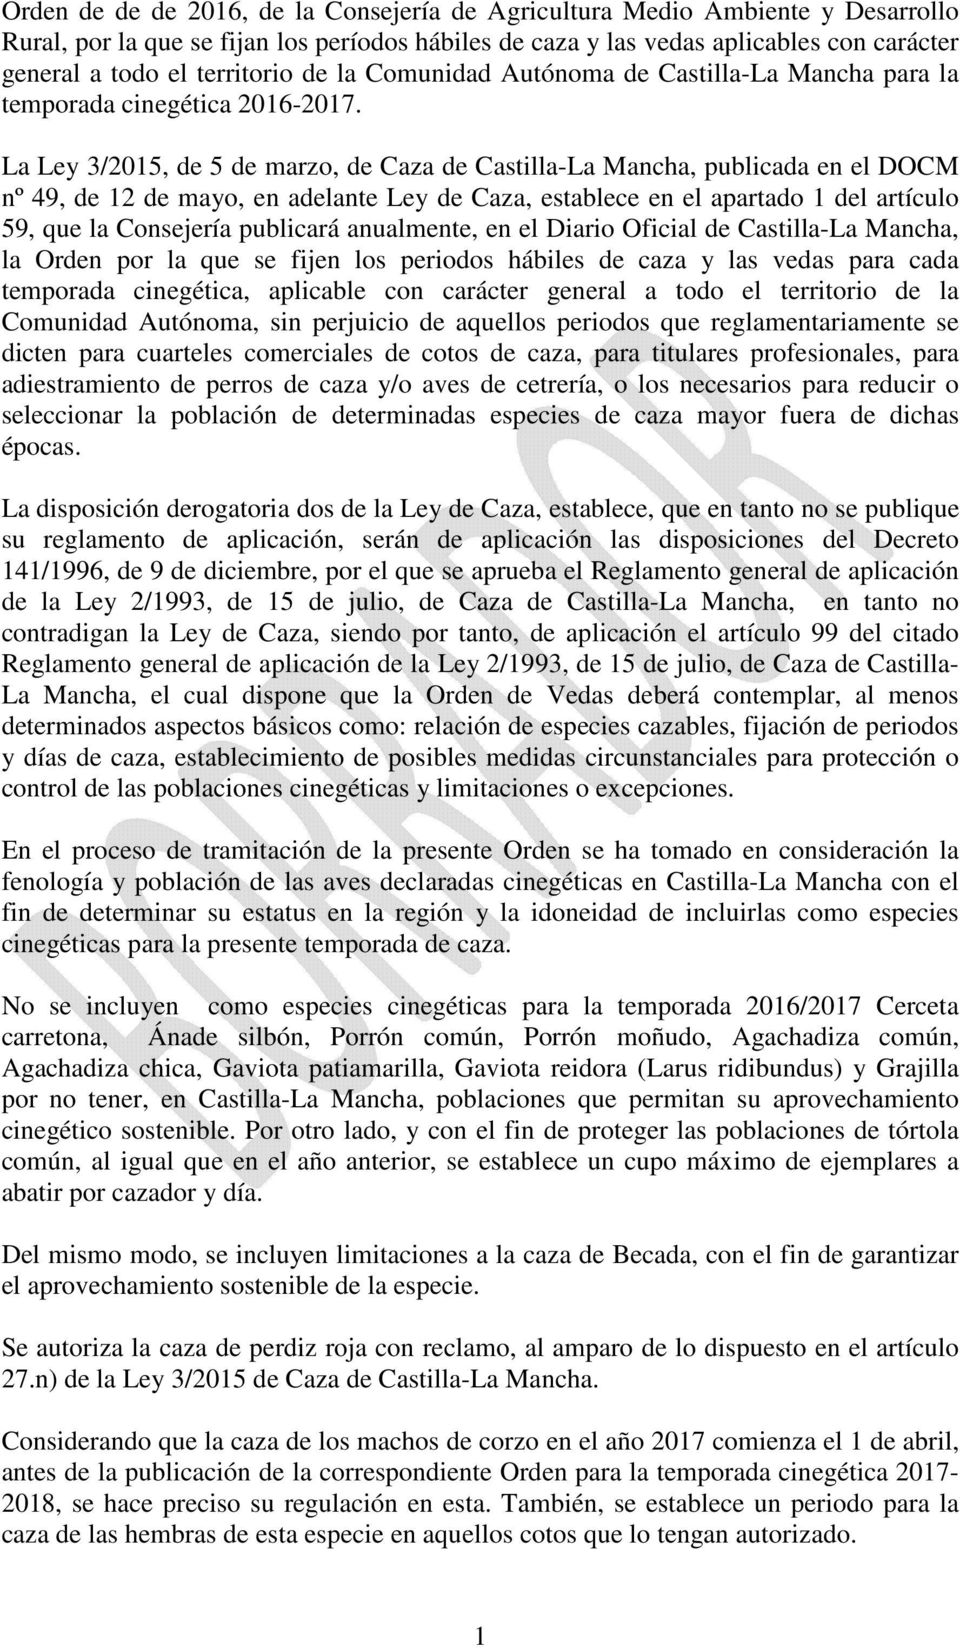 La Ley 3/2015, de 5 de marzo, de Caza de Castilla-La Mancha, publicada en el DOCM nº 49, de 12 de mayo, en adelante Ley de Caza, establece en el apartado 1 del artículo 59, que la Consejería